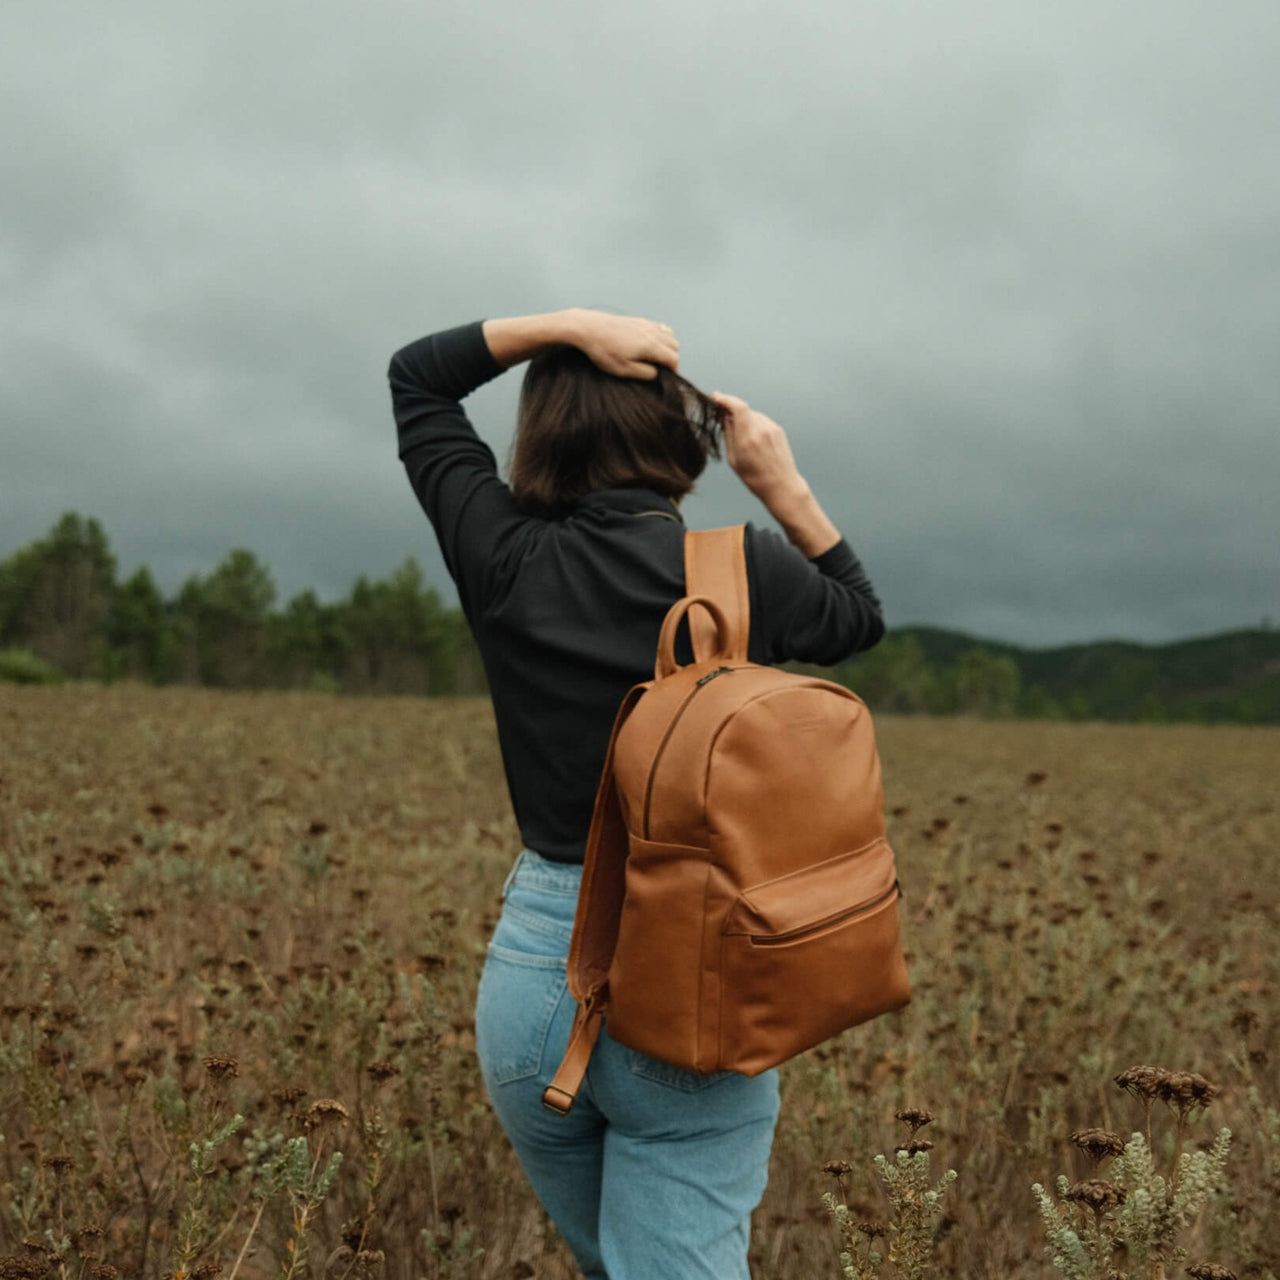 Wanderer Leather Backpack